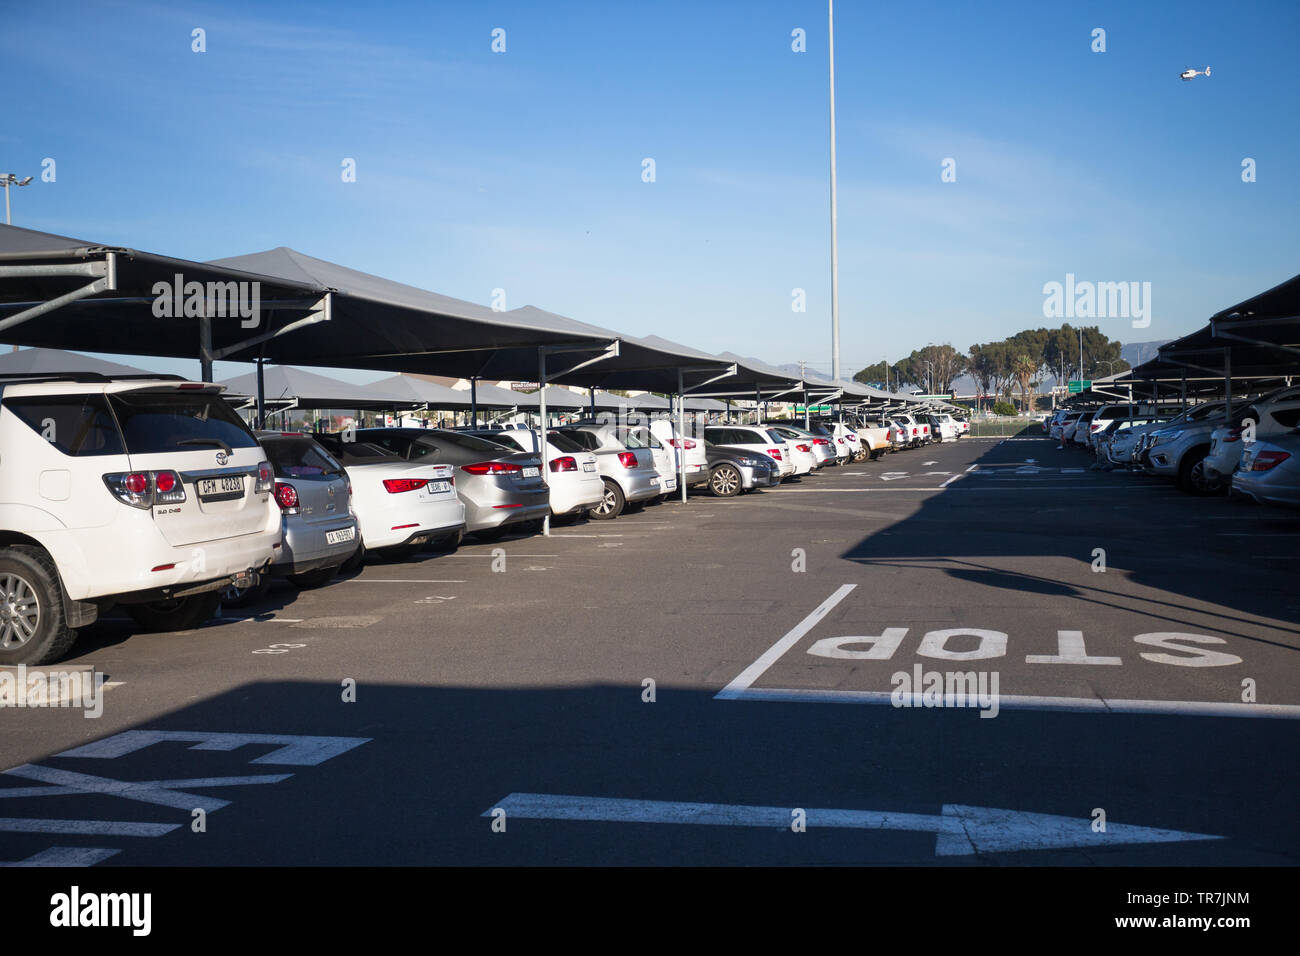 Ombre ou parking couvert de lignes et lignes de véhicules en stationnement pour la journée dans le parking public à l'Aéroport International de Cape Town en Afrique du Sud Banque D'Images